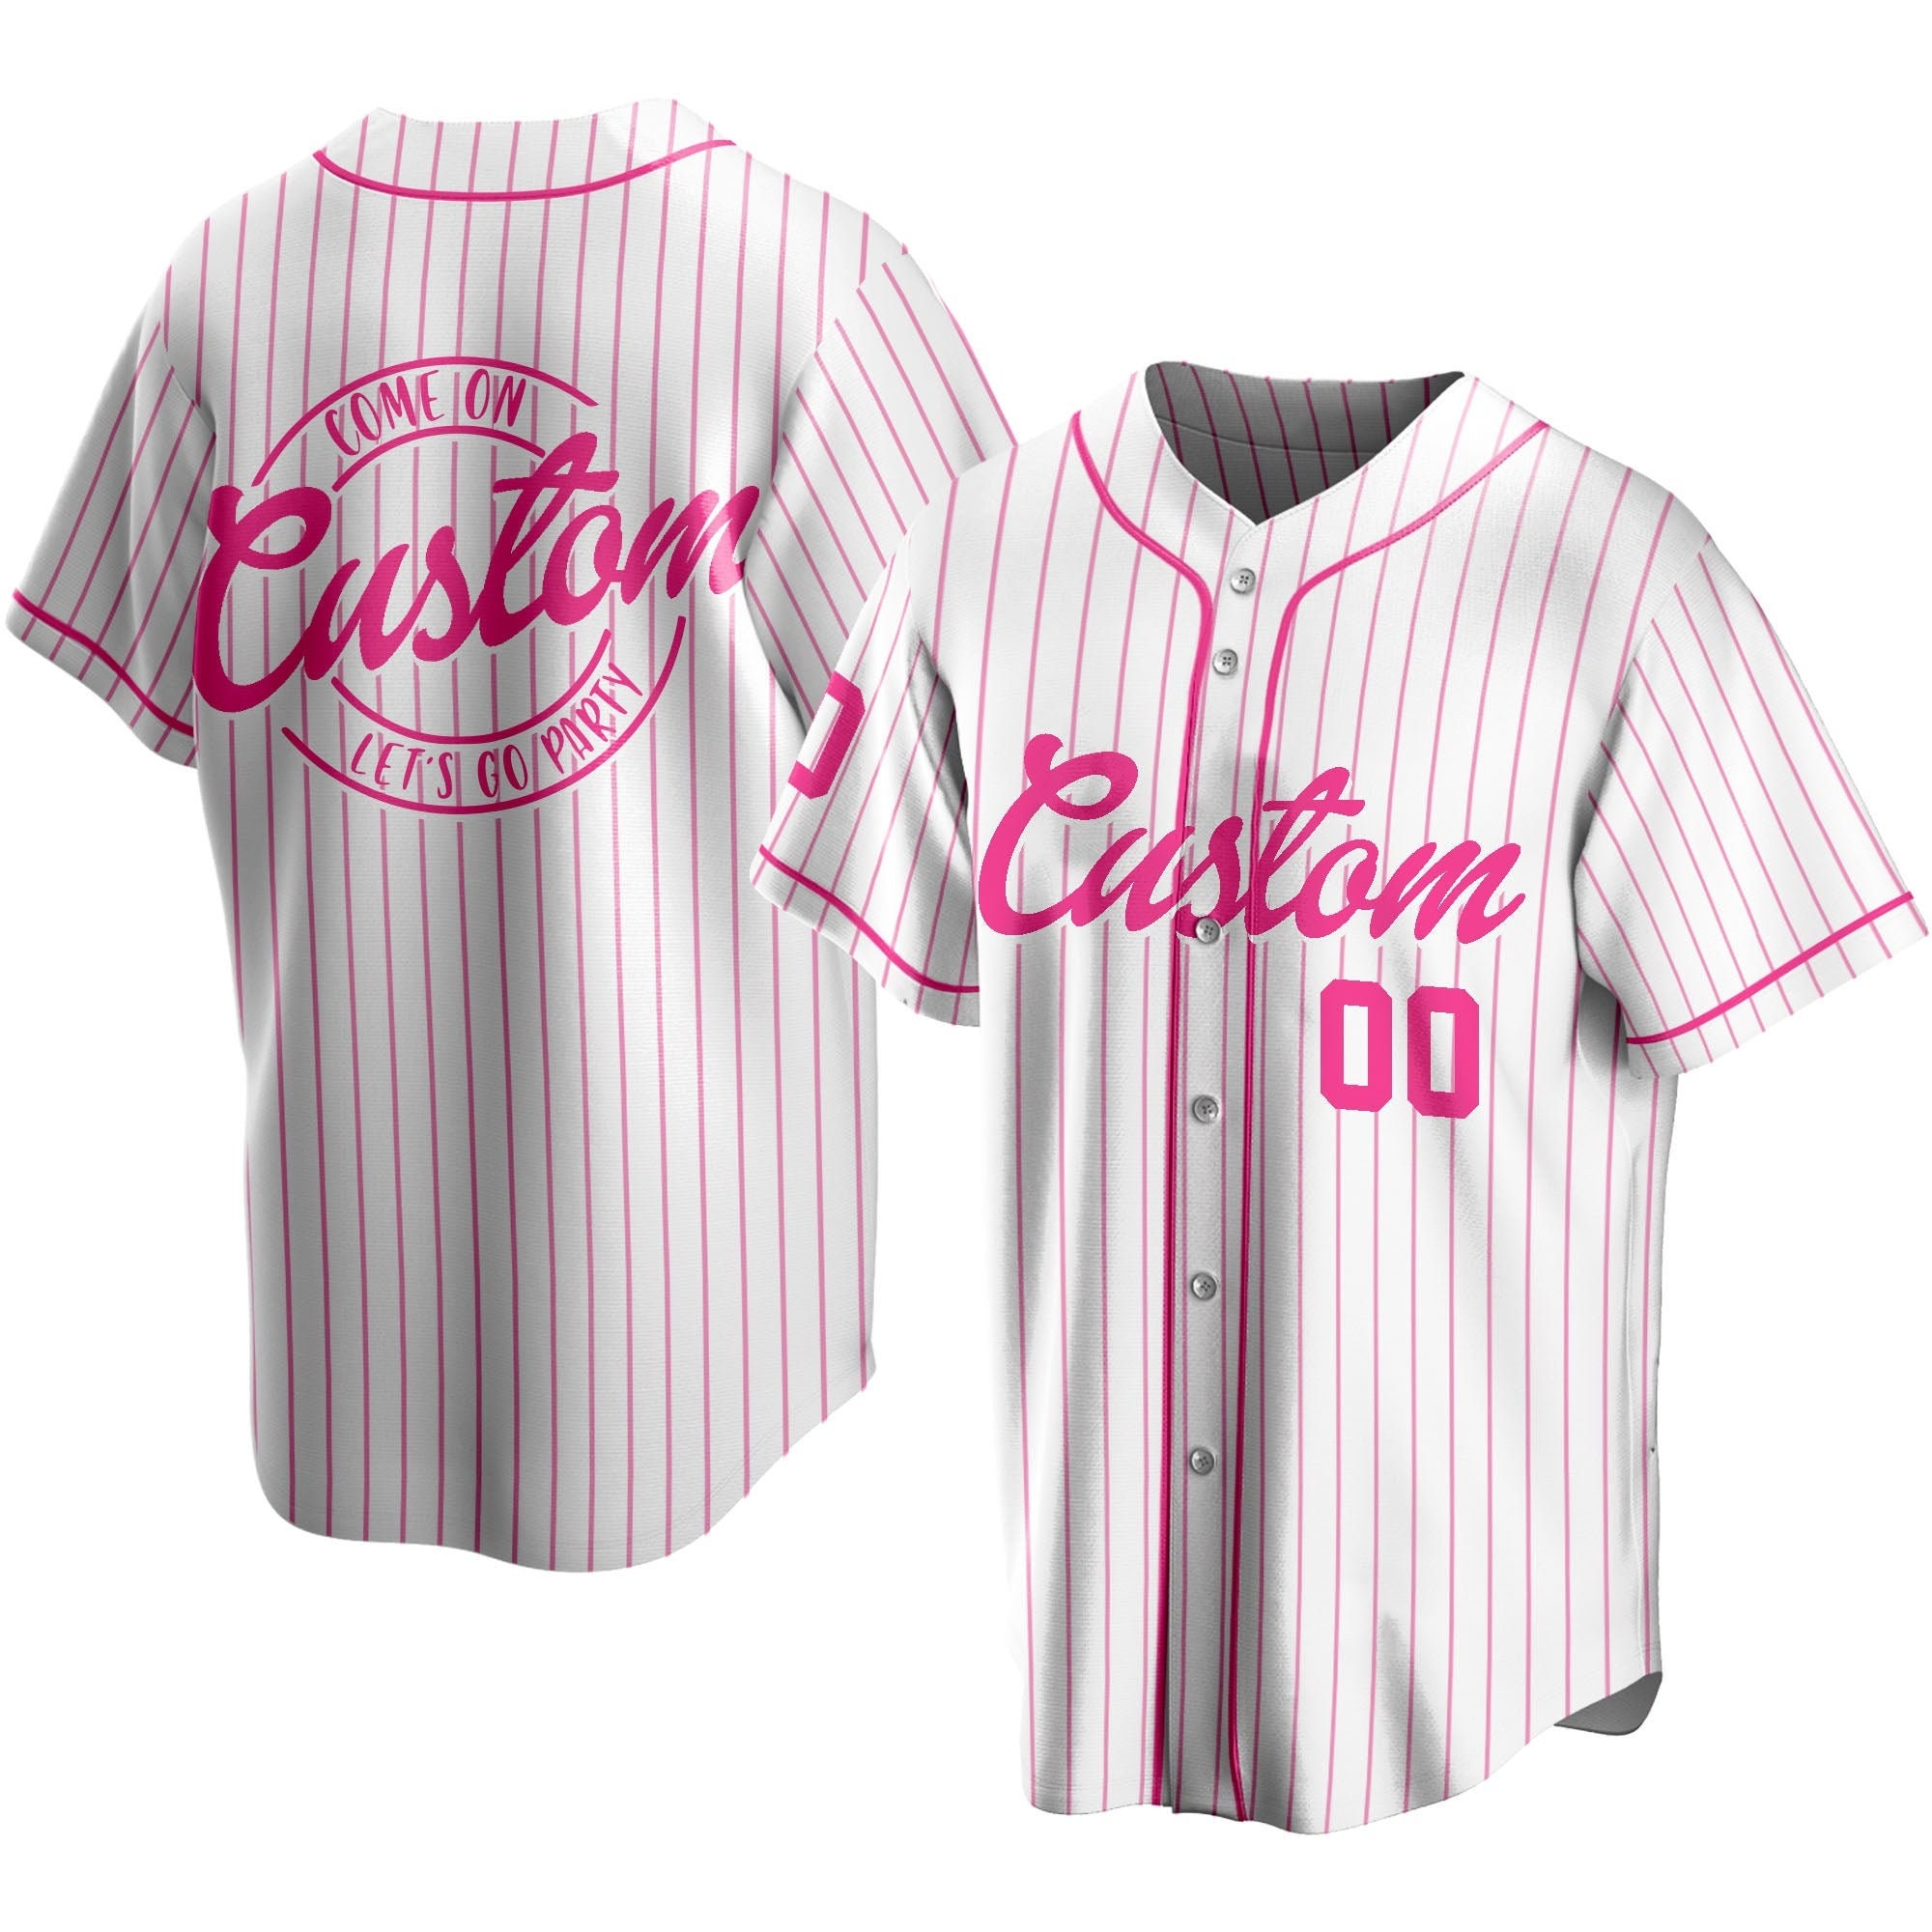 Personalized Whataburger Baseball Jersey - Customizable - Scesy